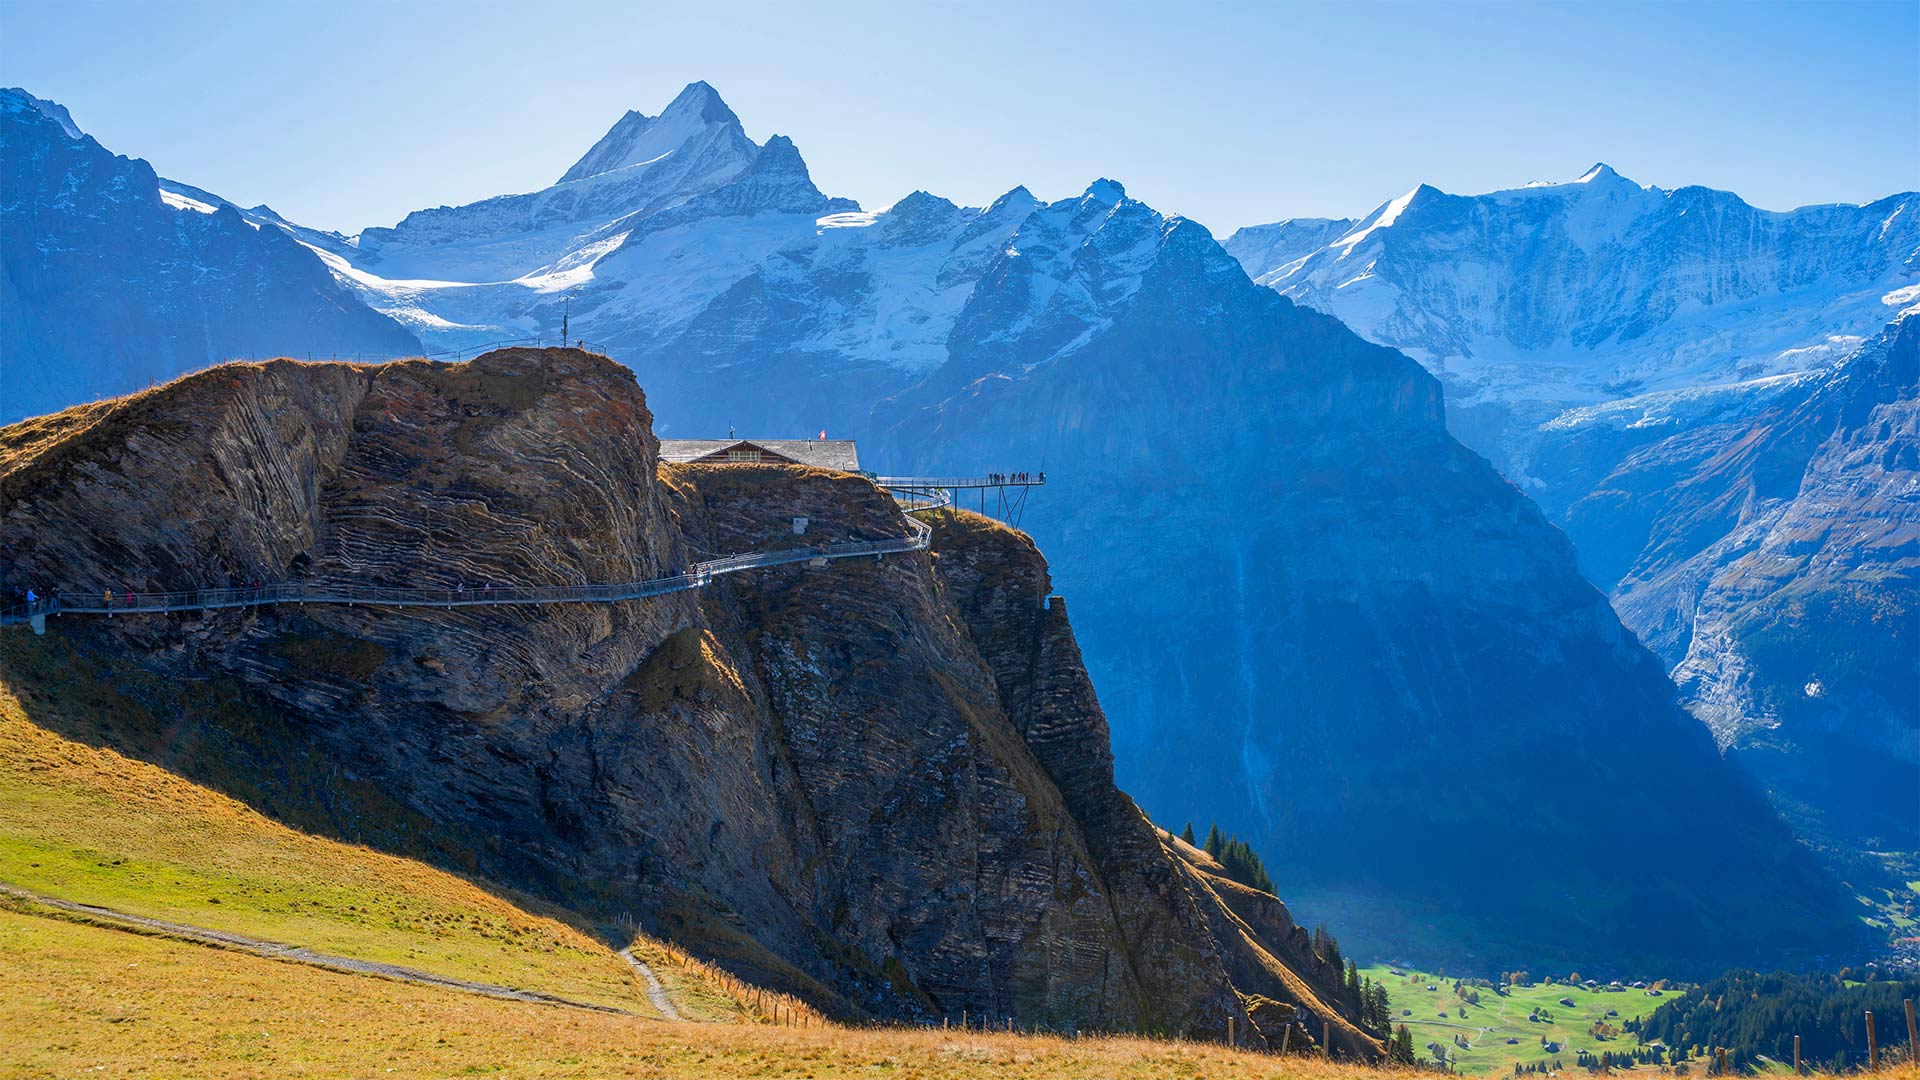 First Cliff Walk on First near Grindelwald, Switzerland - Hans-Georg Eiben/eStock Photo)